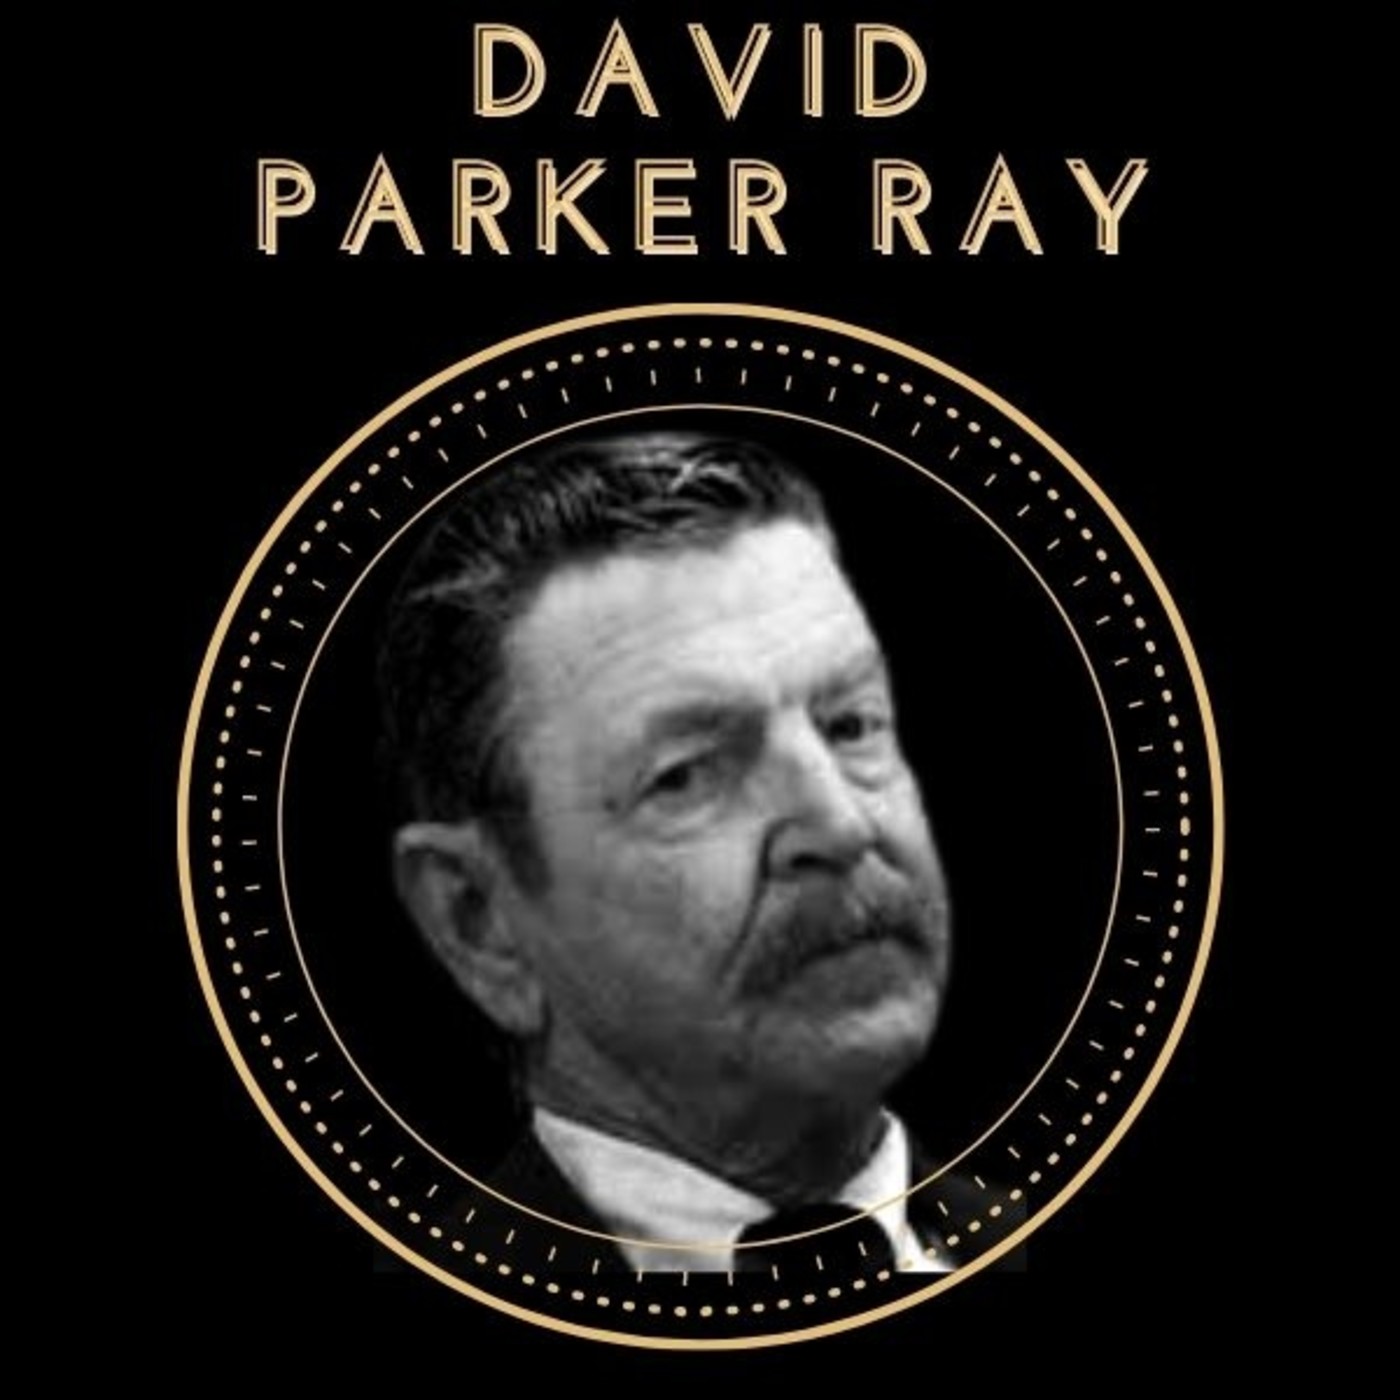 Ep. 13 Historia Oculta: David Parker Ray. El Asesino de la Caja de Juguetes